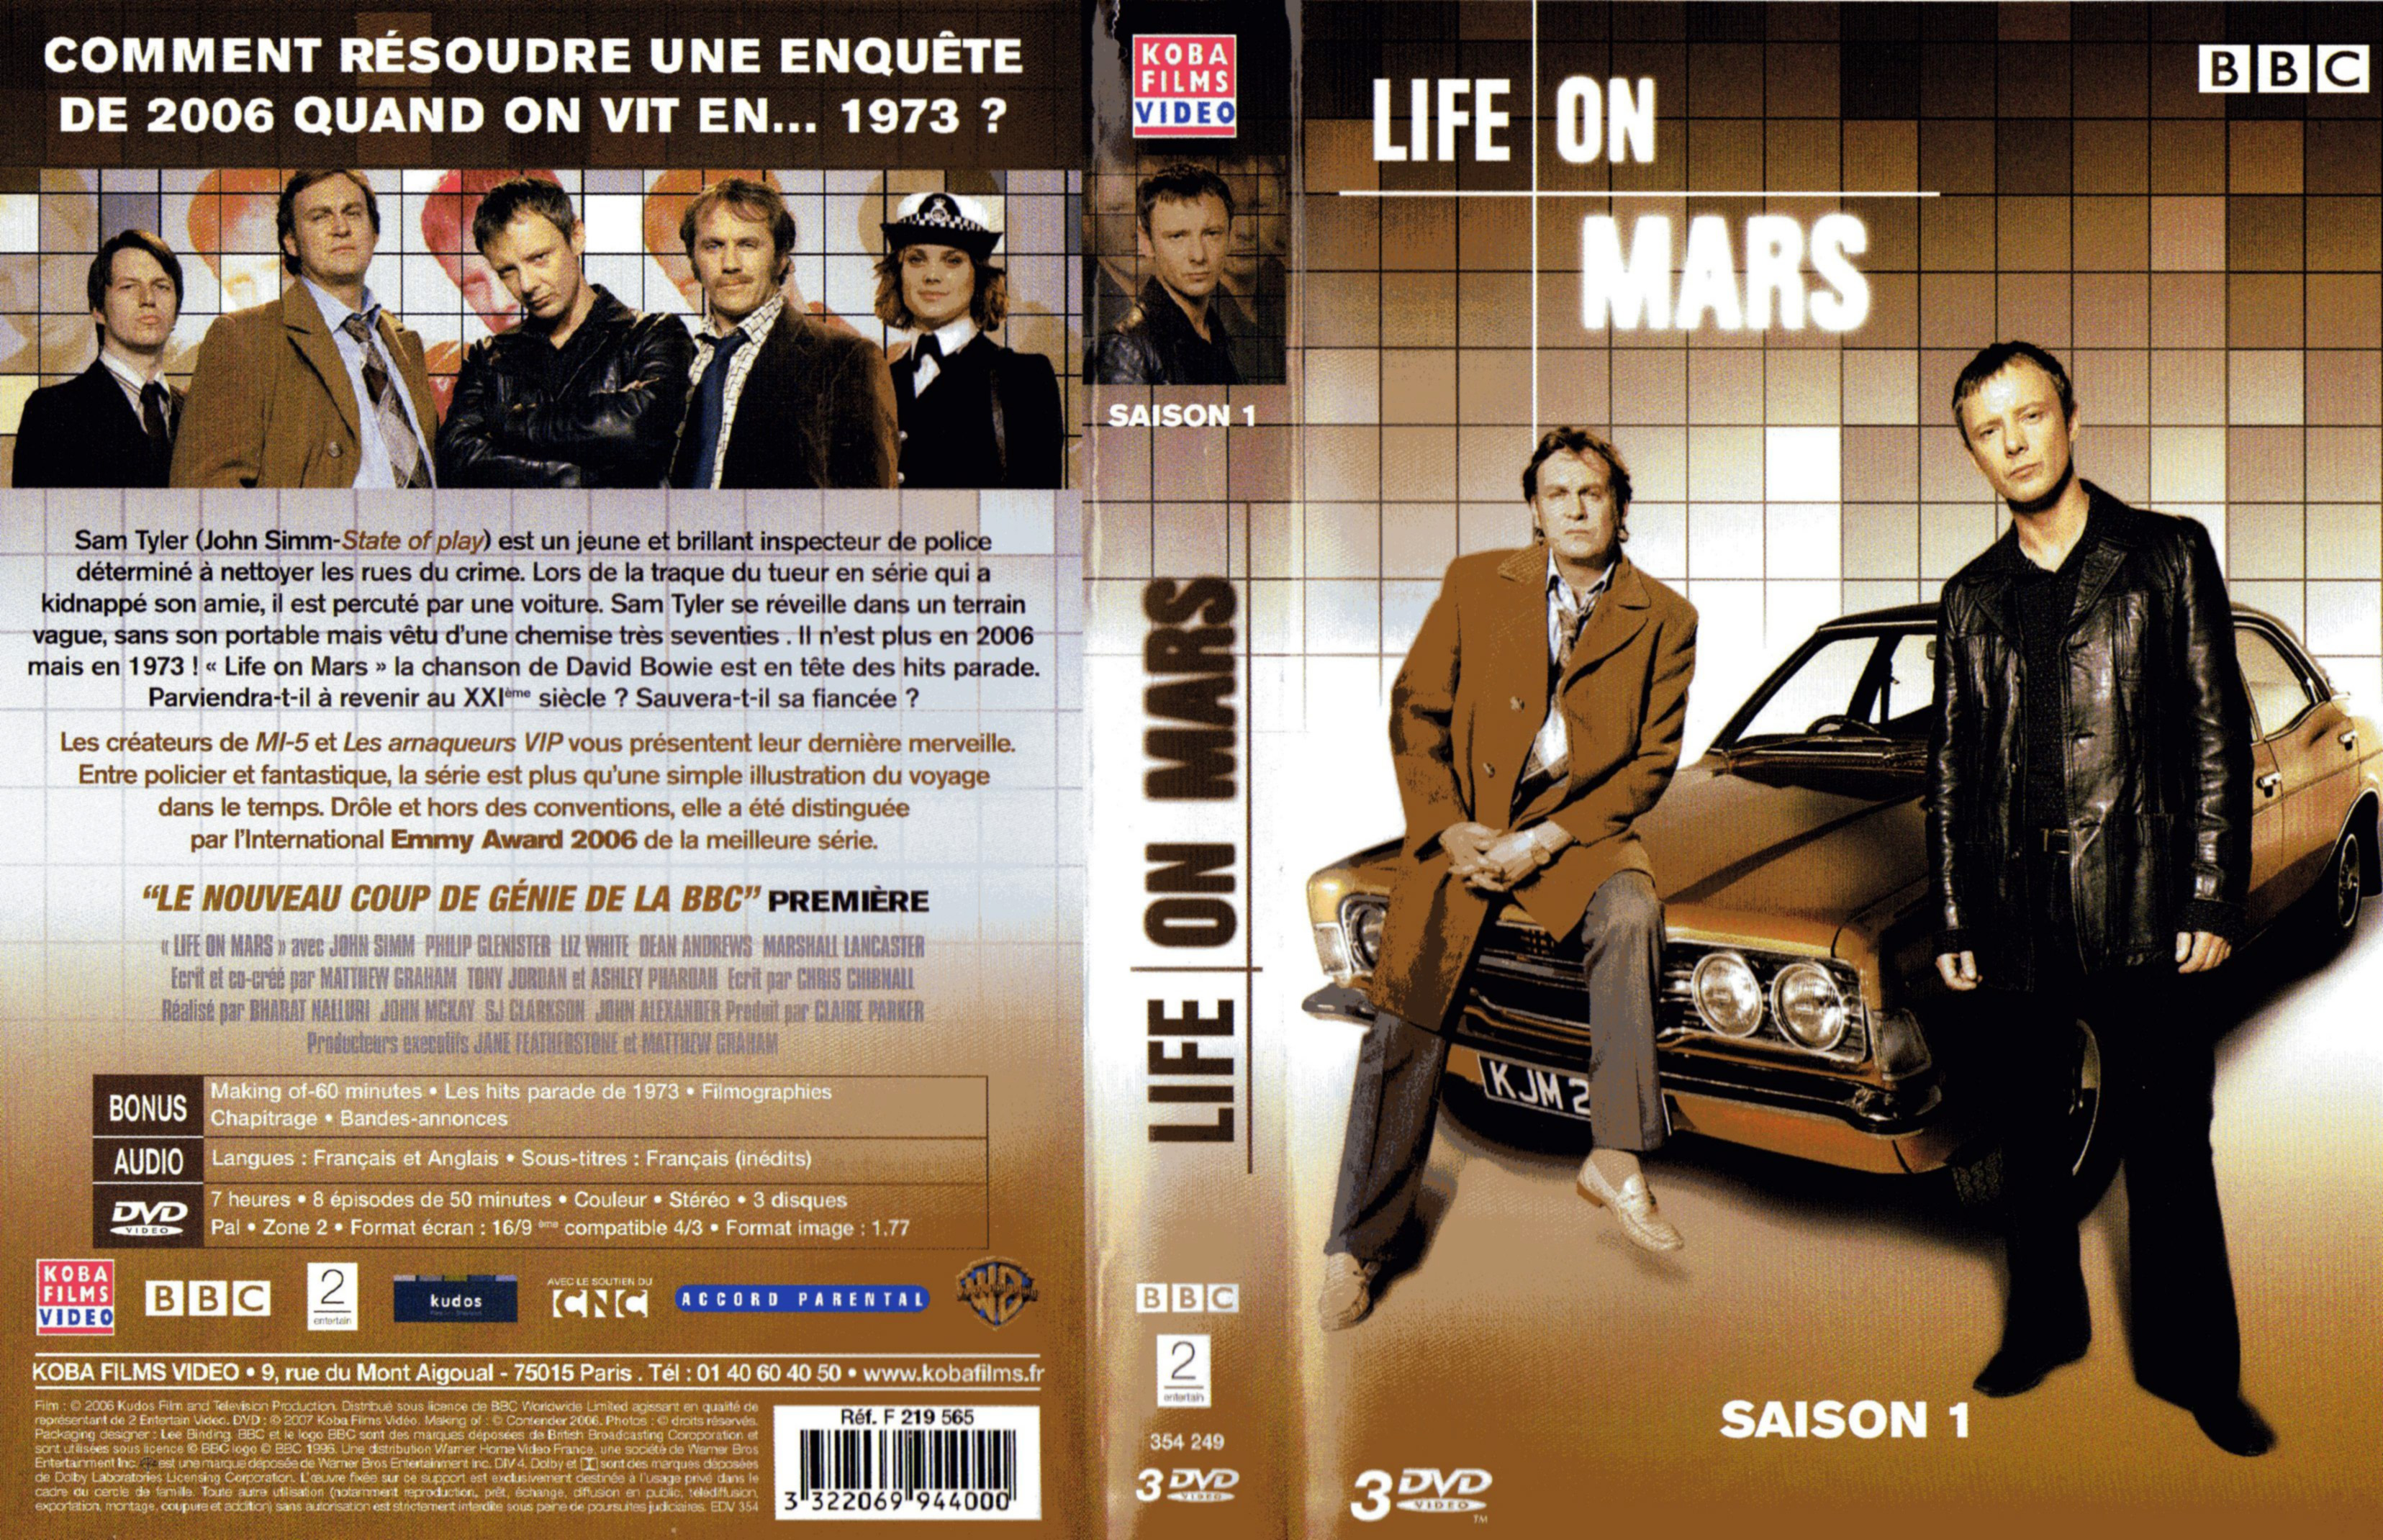 Jaquette DVD Life on mars Saison 1 COFFRET